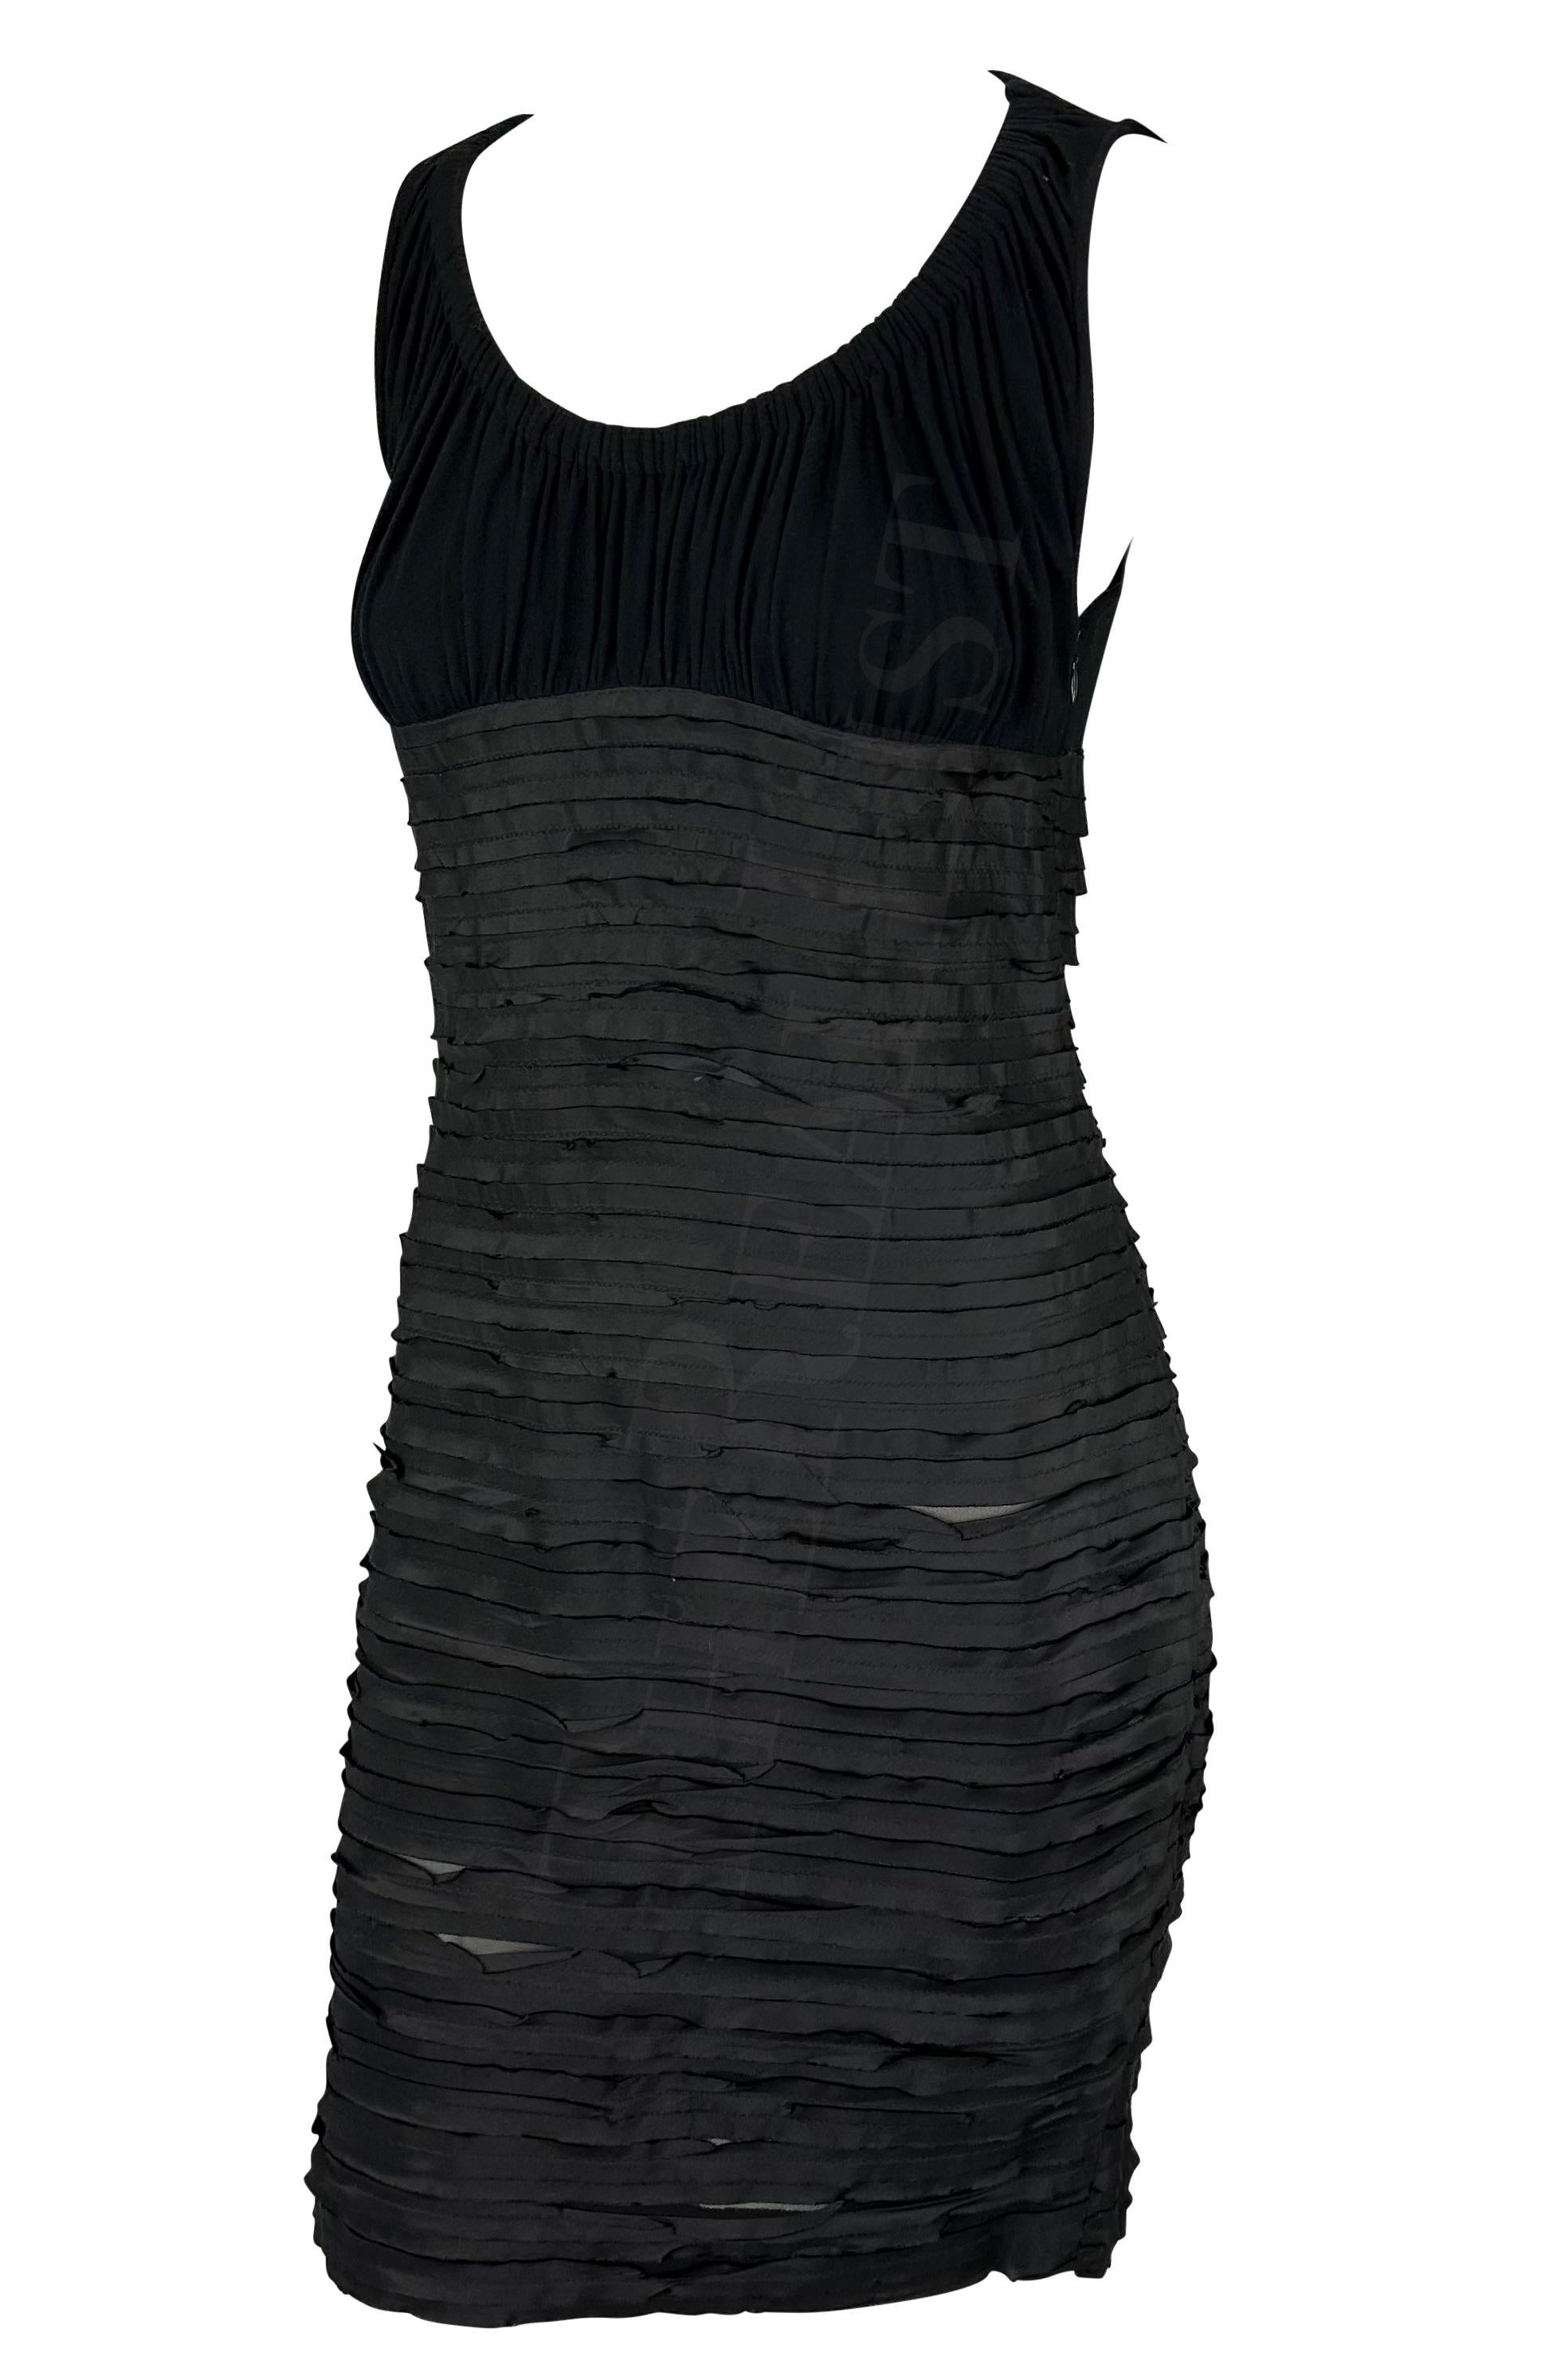 Ich präsentiere ein schickes schwarzes Minikleid von Versace, entworfen von Donatella Versace. Dieses Kleid aus der Herbst/Winter-Kollektion 2005 hat einen weiten Rundhalsausschnitt, einen verdeckten Reißverschluss und ein Band, das um Taille und